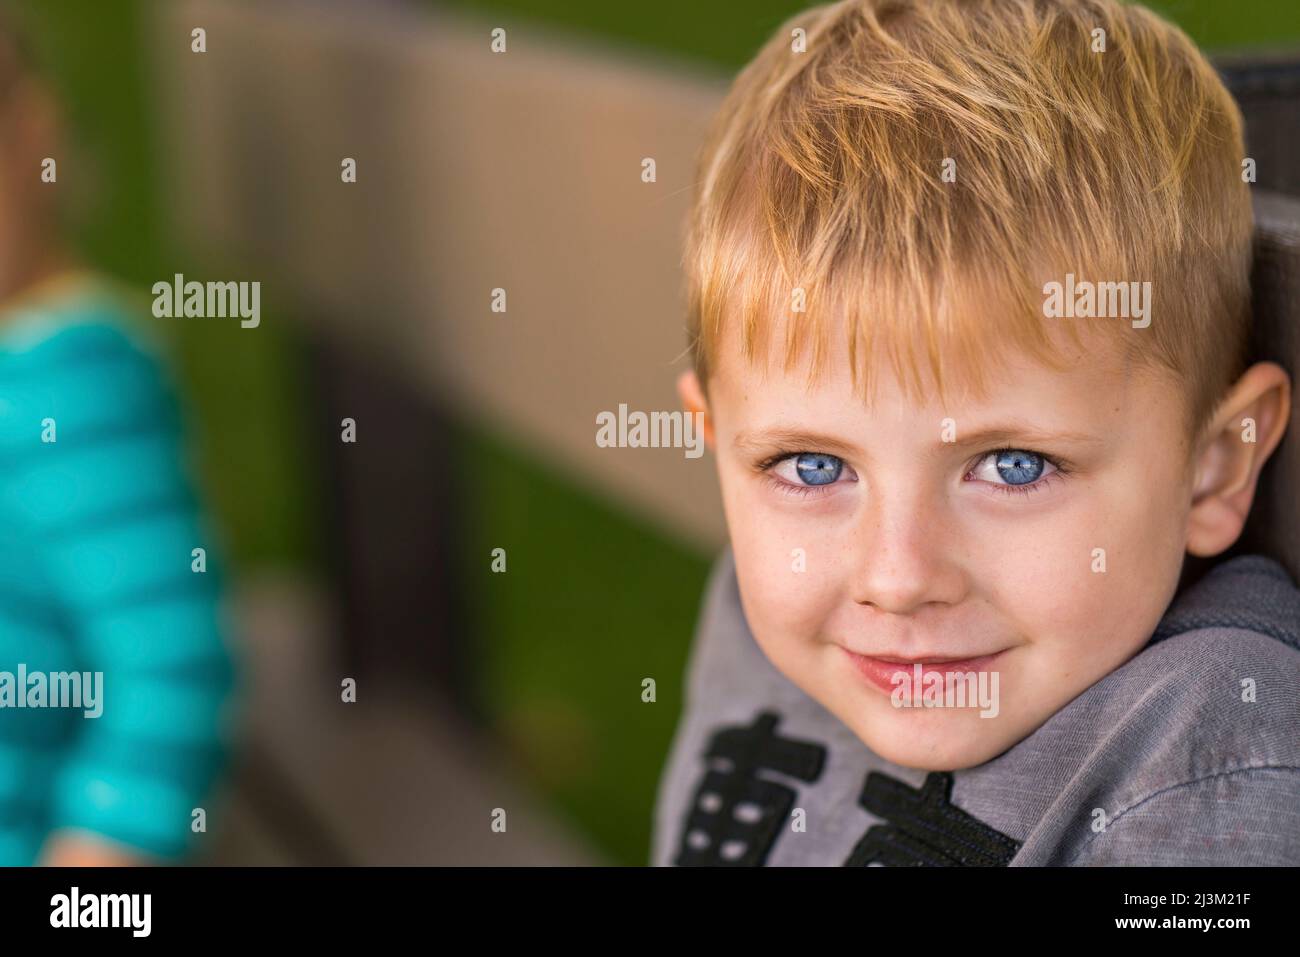 Portrait en gros plan d'un jeune garçon aux yeux bleus et aux cheveux blonds; Toronto, Ontario, Canada Banque D'Images